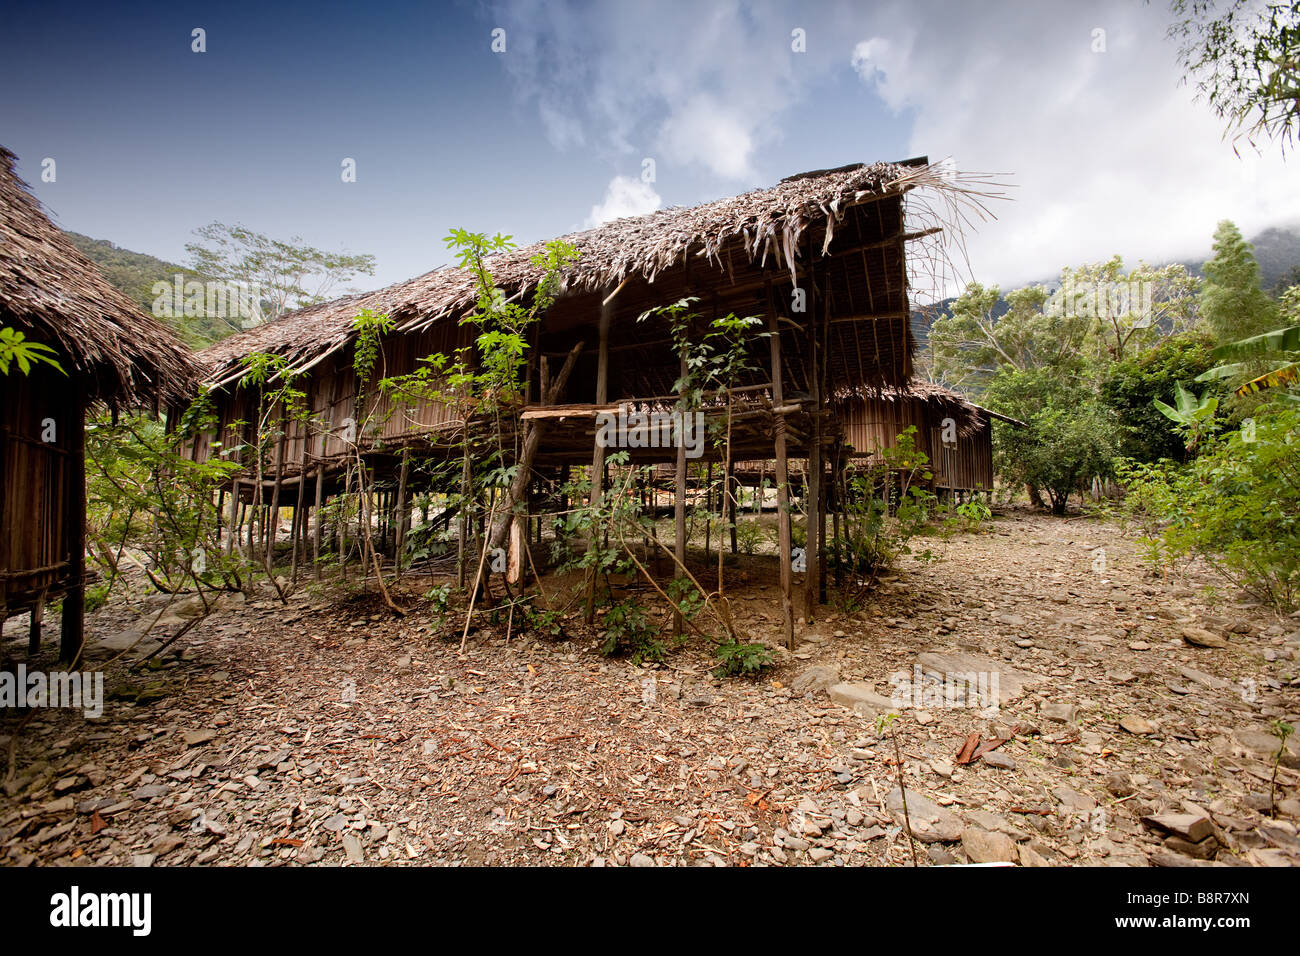 Ein traditionelles Dorf-Hütte in Papua, Indonesien Stockfoto